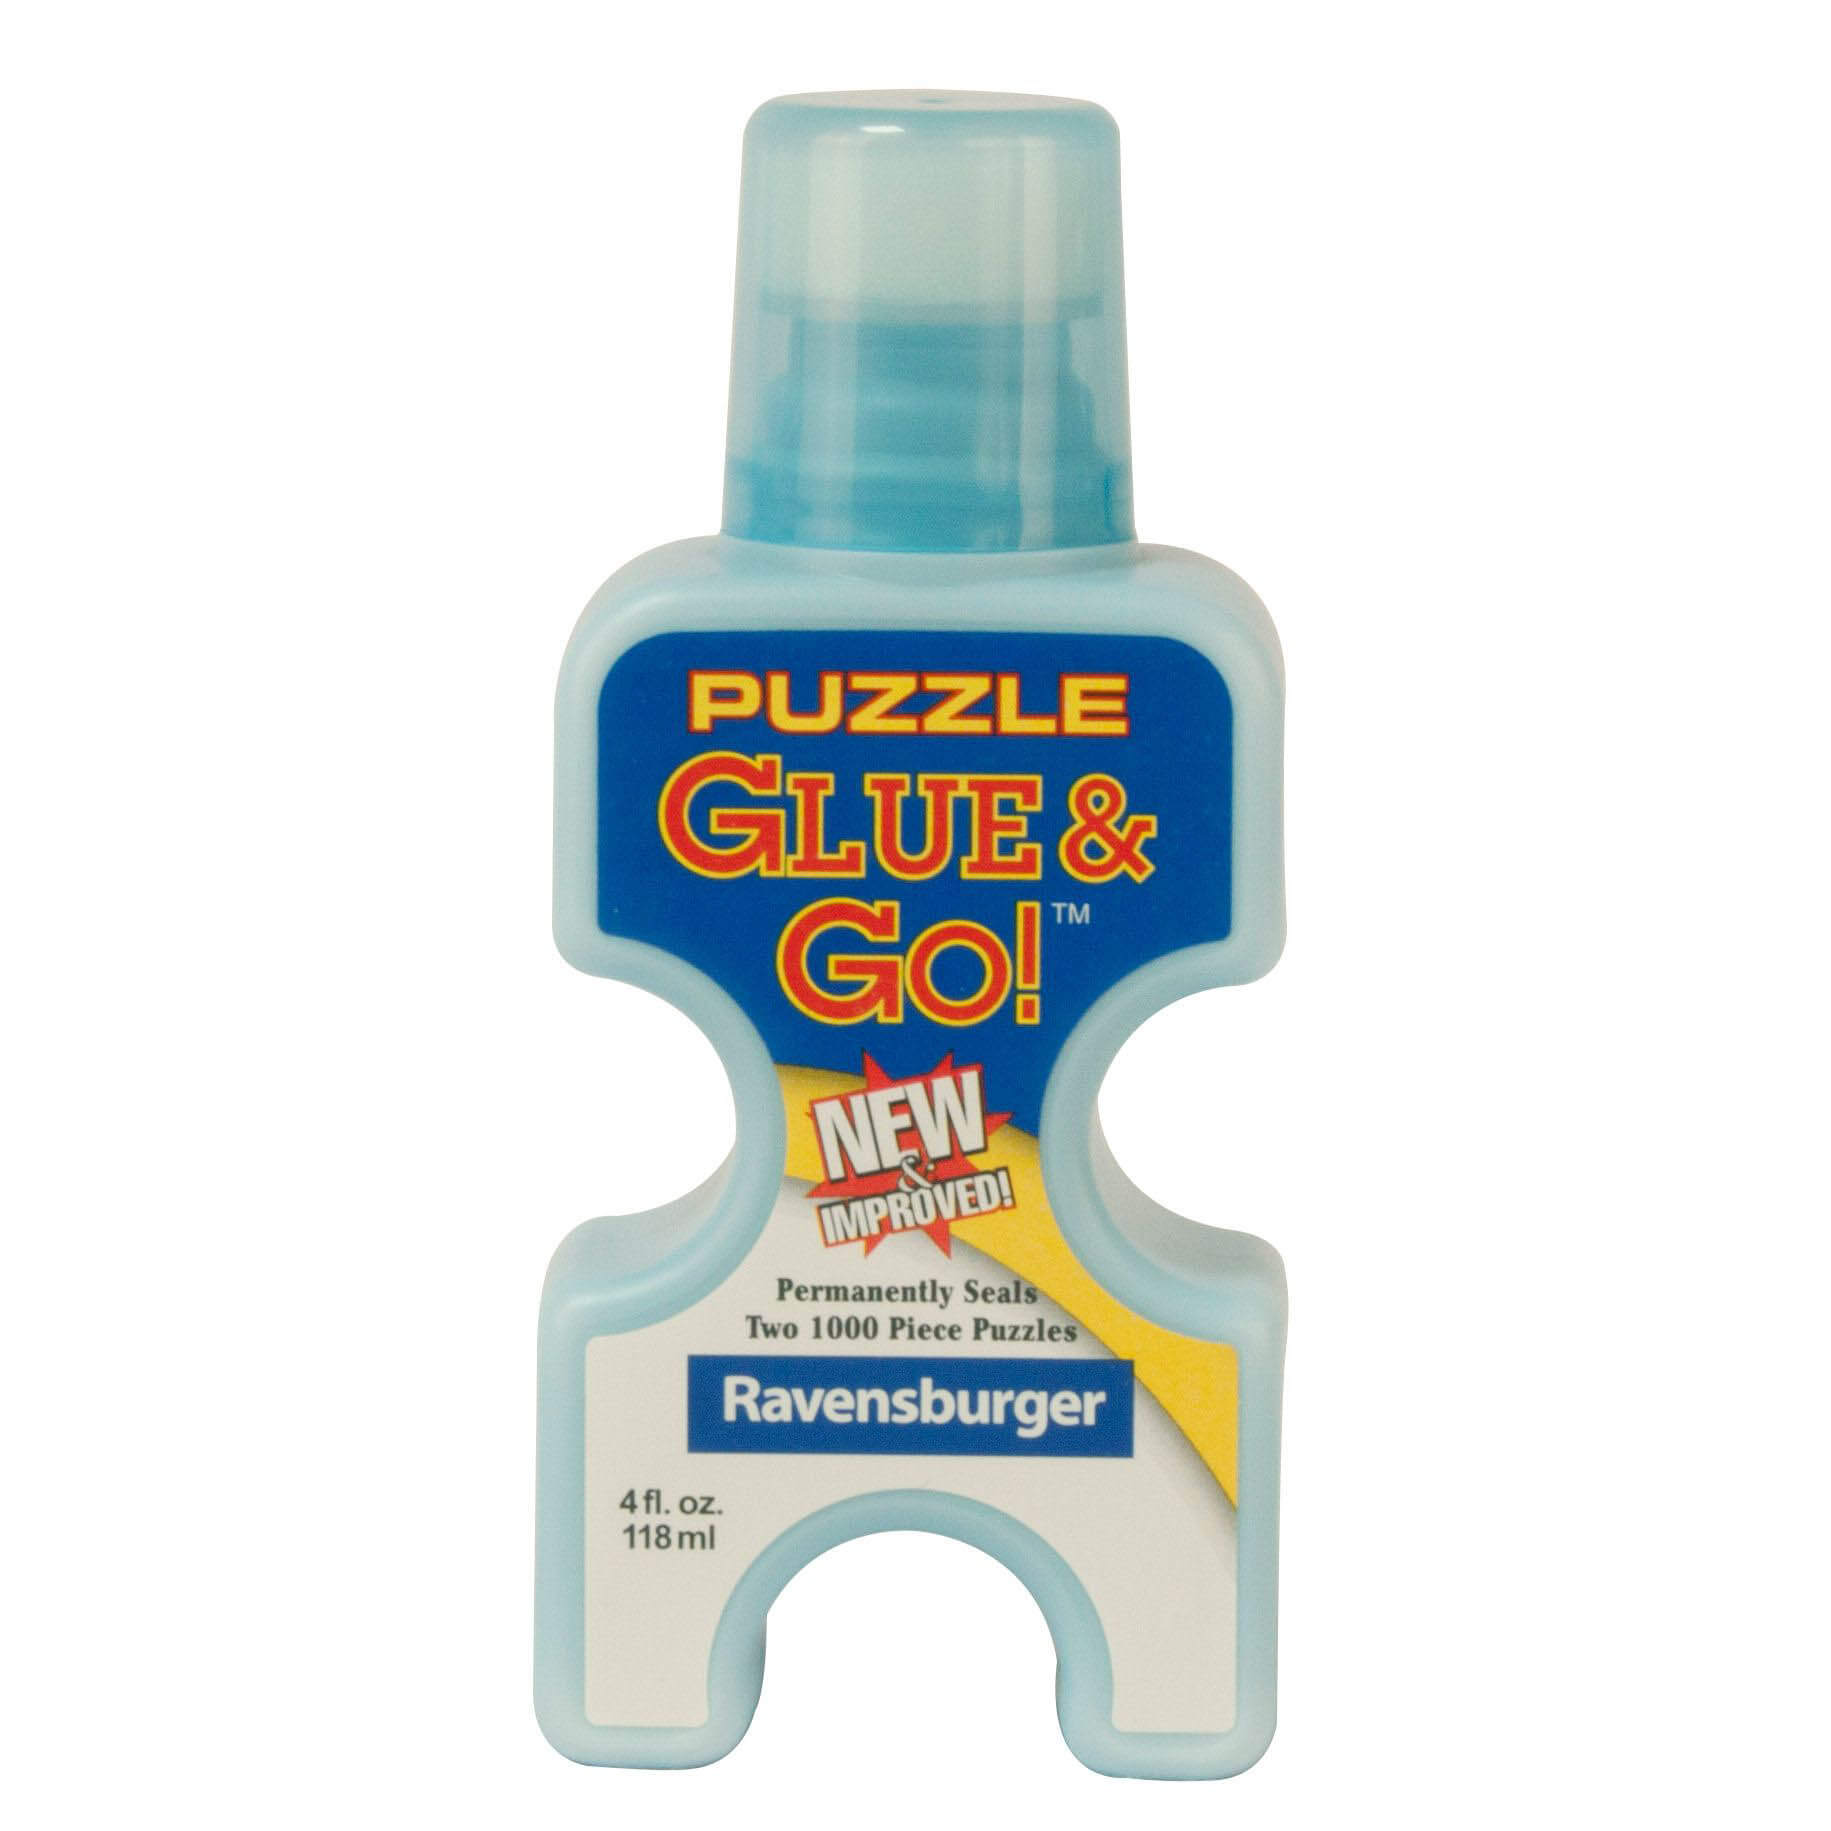 Ravensburger Puzzle Glue & Go!